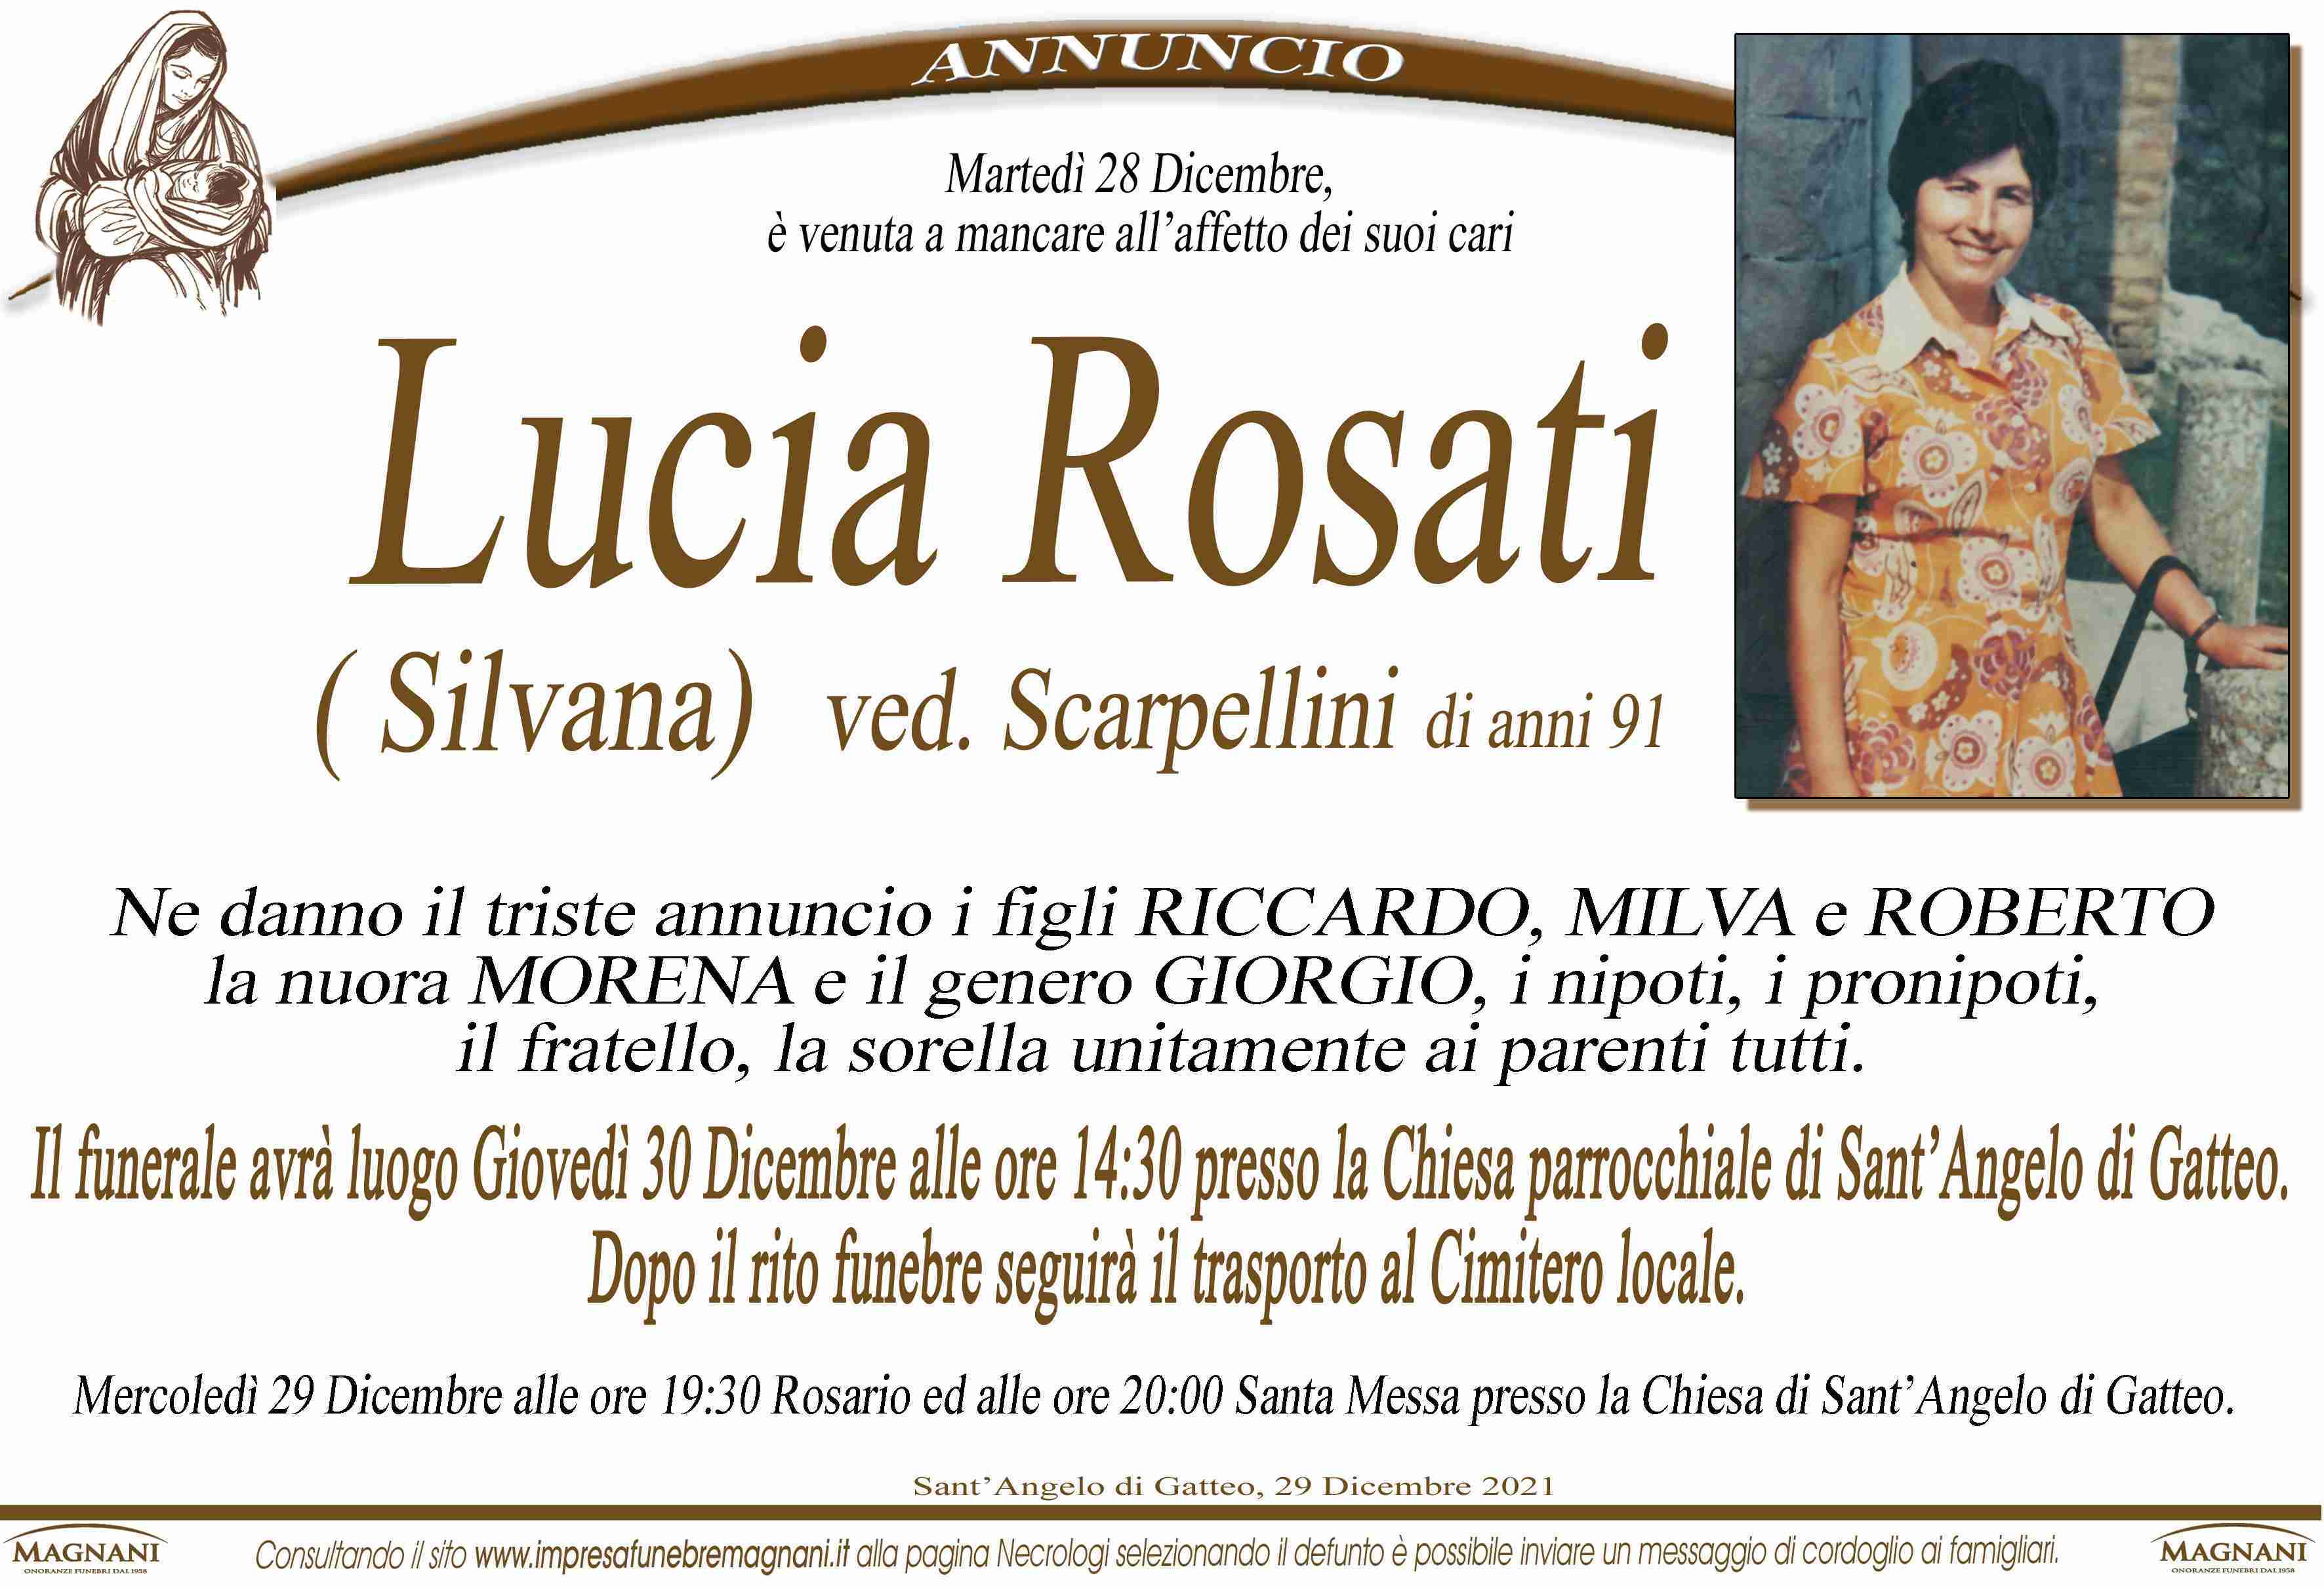 Lucia Rosati